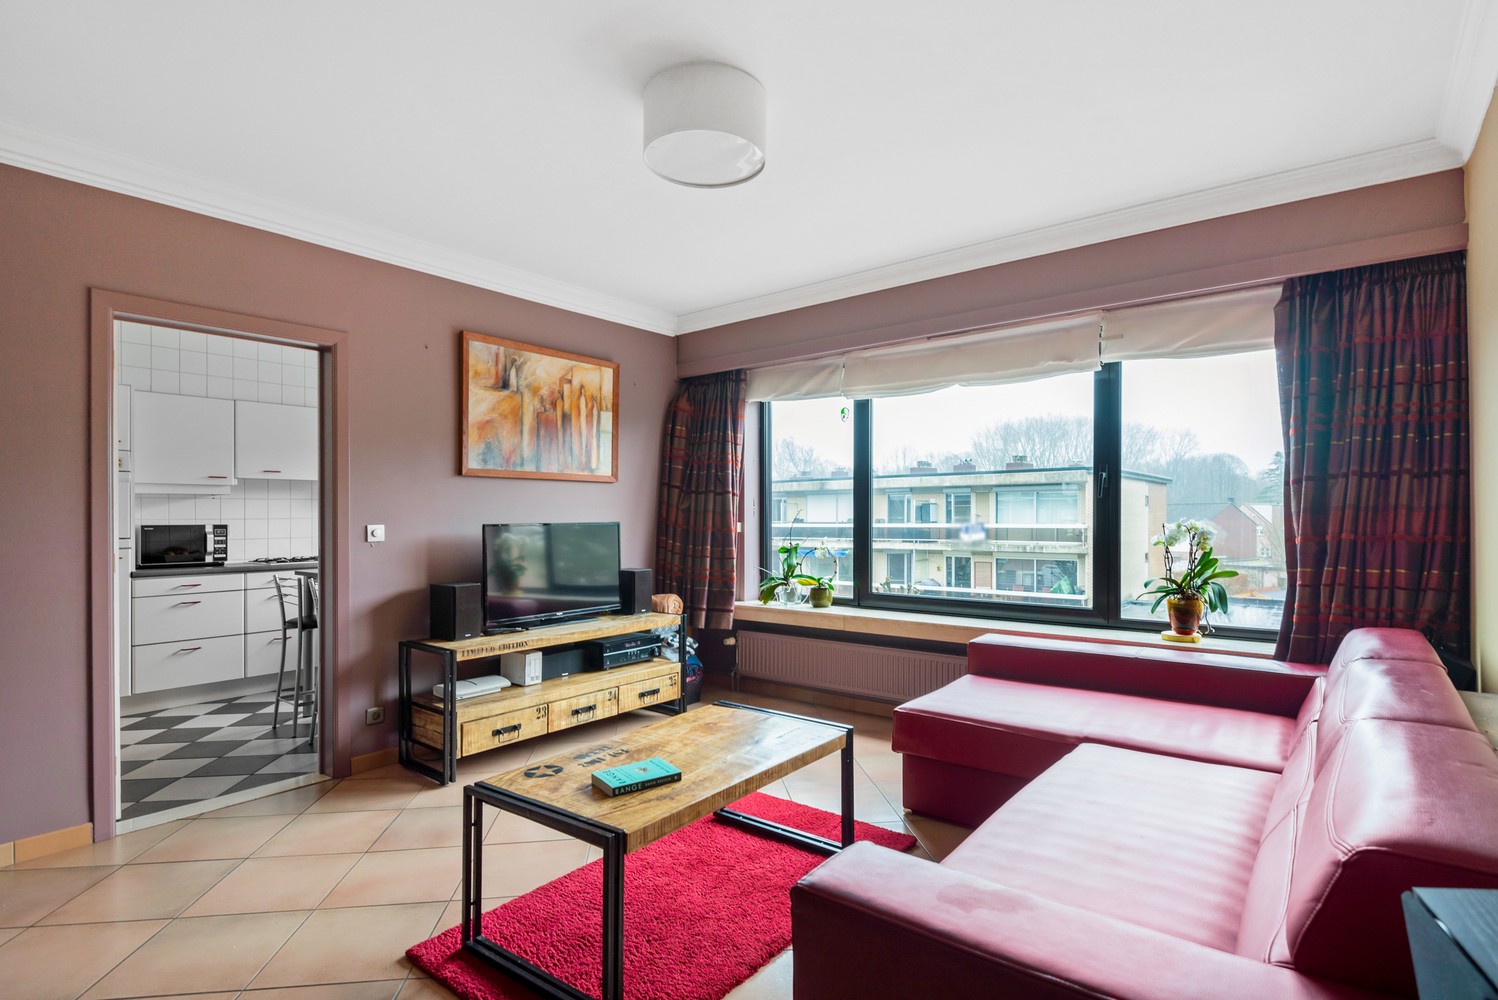 Instapklaar appartement met 2 à 3 slaapkamers, terras en garage in Wommelgem! afbeelding 4